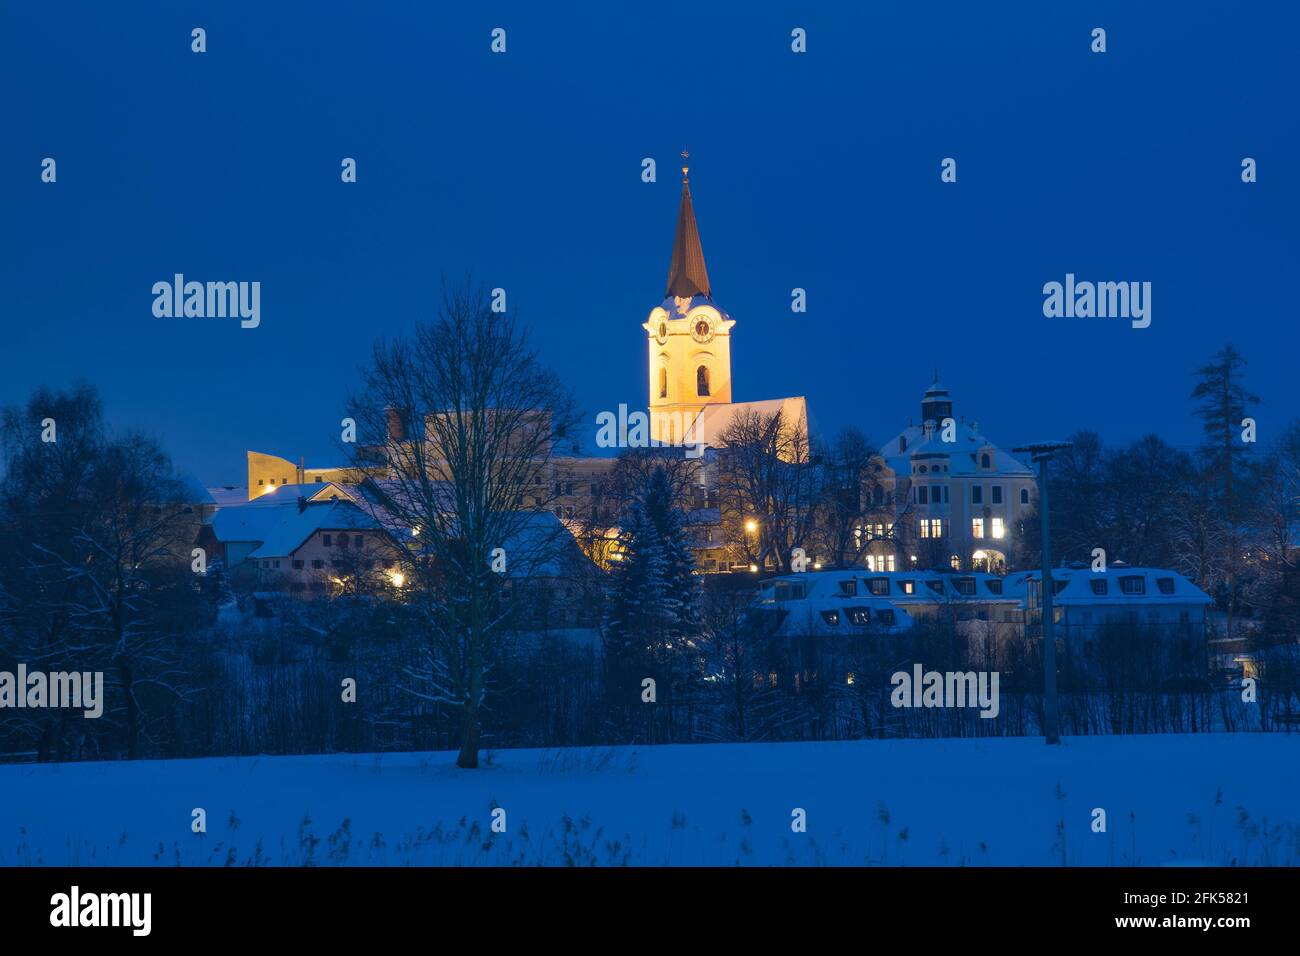 Teisendorf im herrlich tiefverschneiten Winter bei Nacht Stock Photo